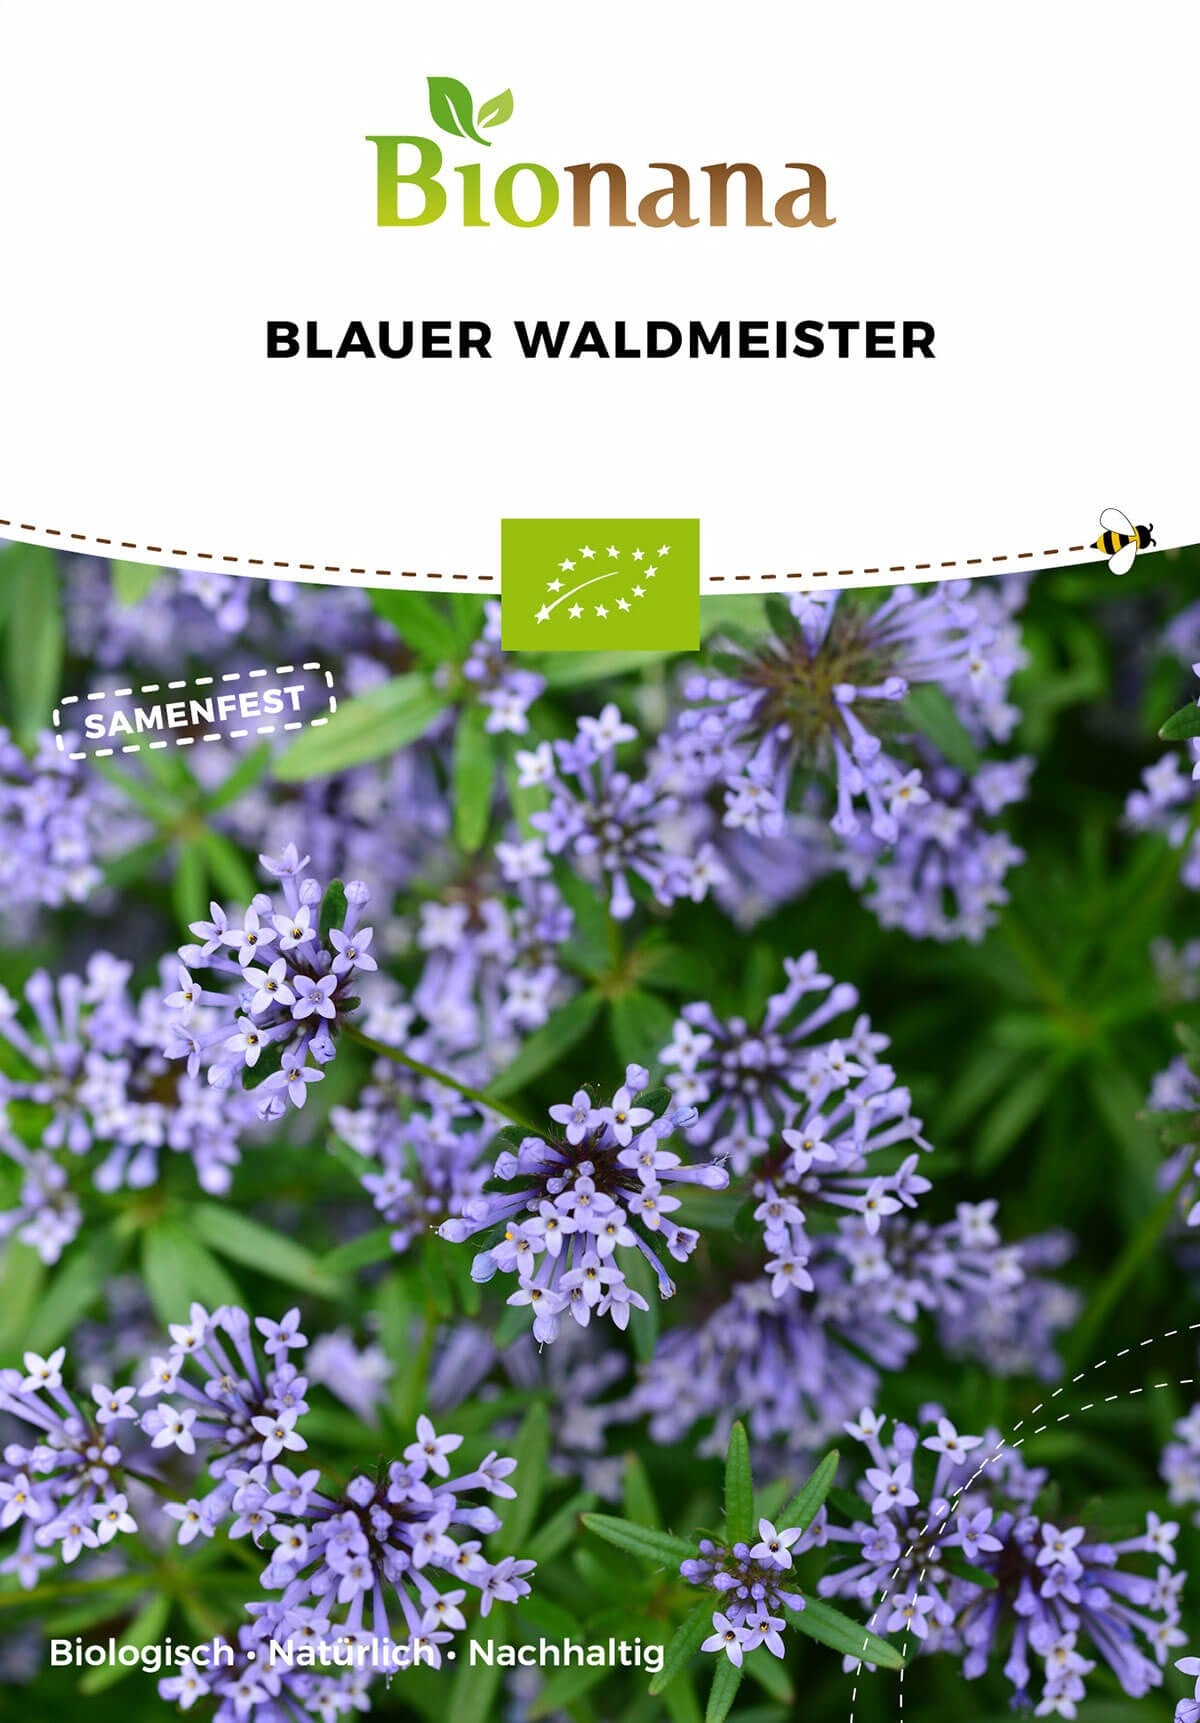 Blauer Waldmeister | BIO Waldmeistersamen von Bionana